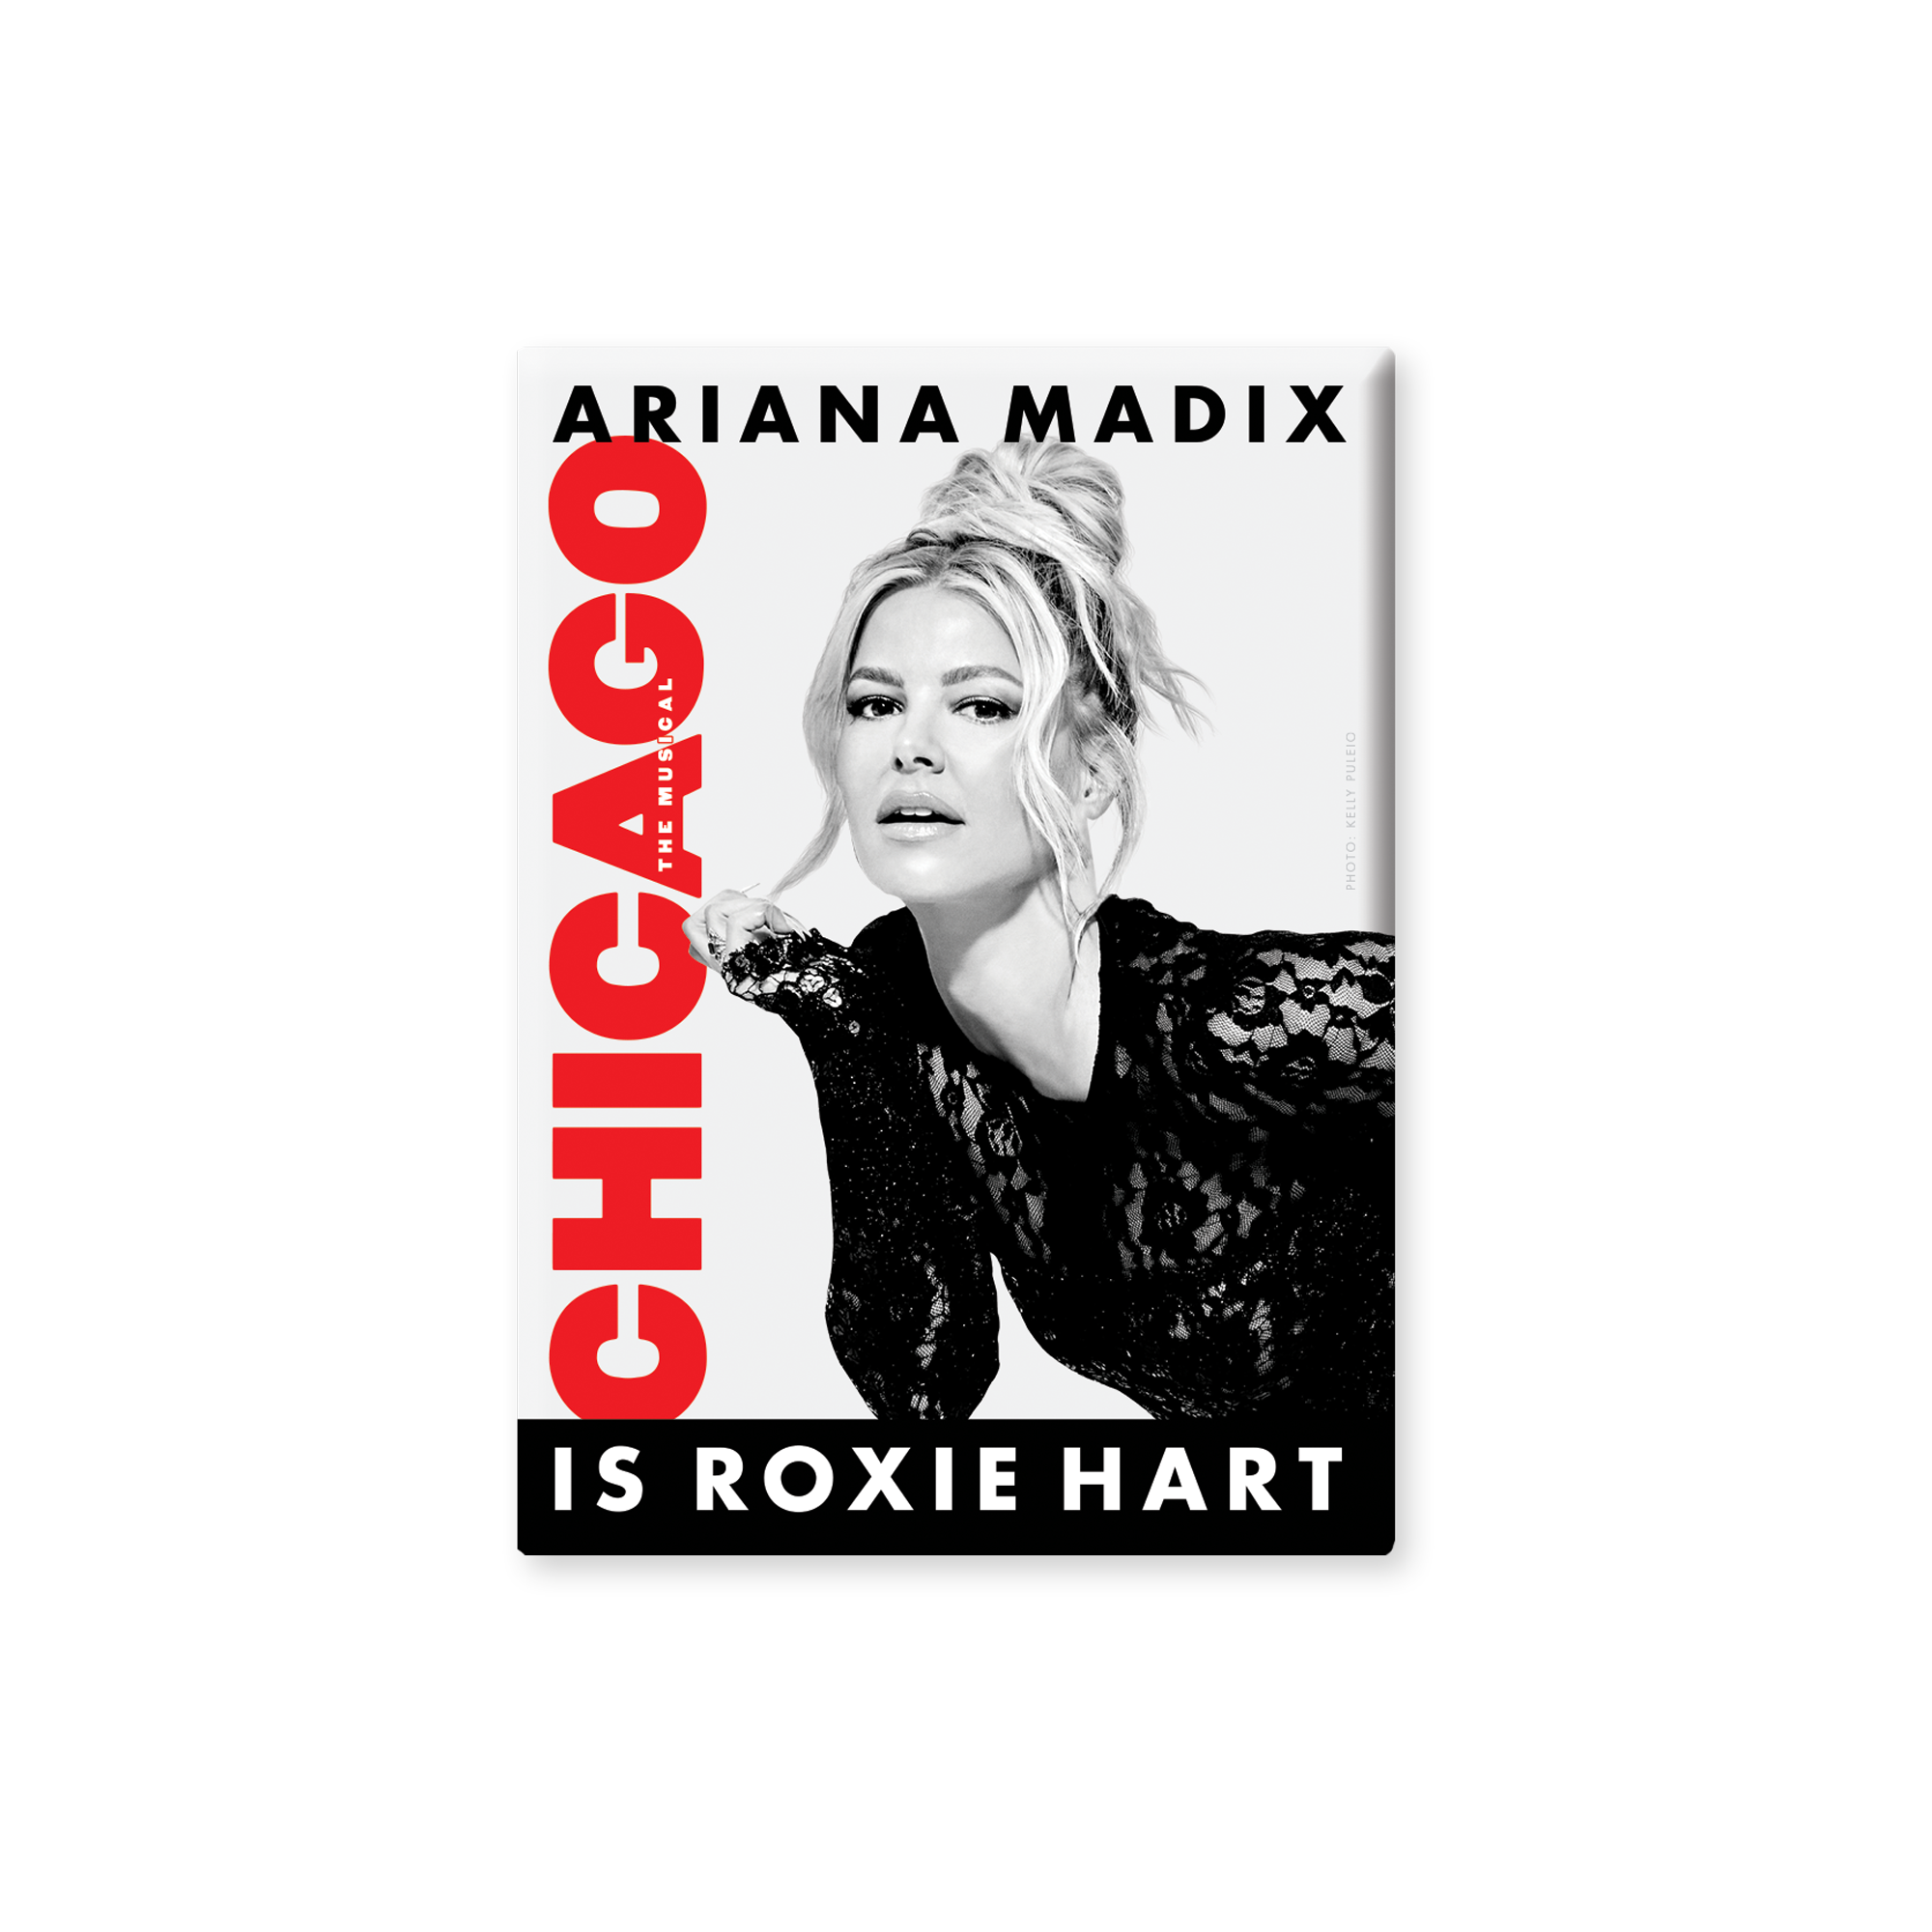 CHICAGO Ariana Madix Photo Magnet Image